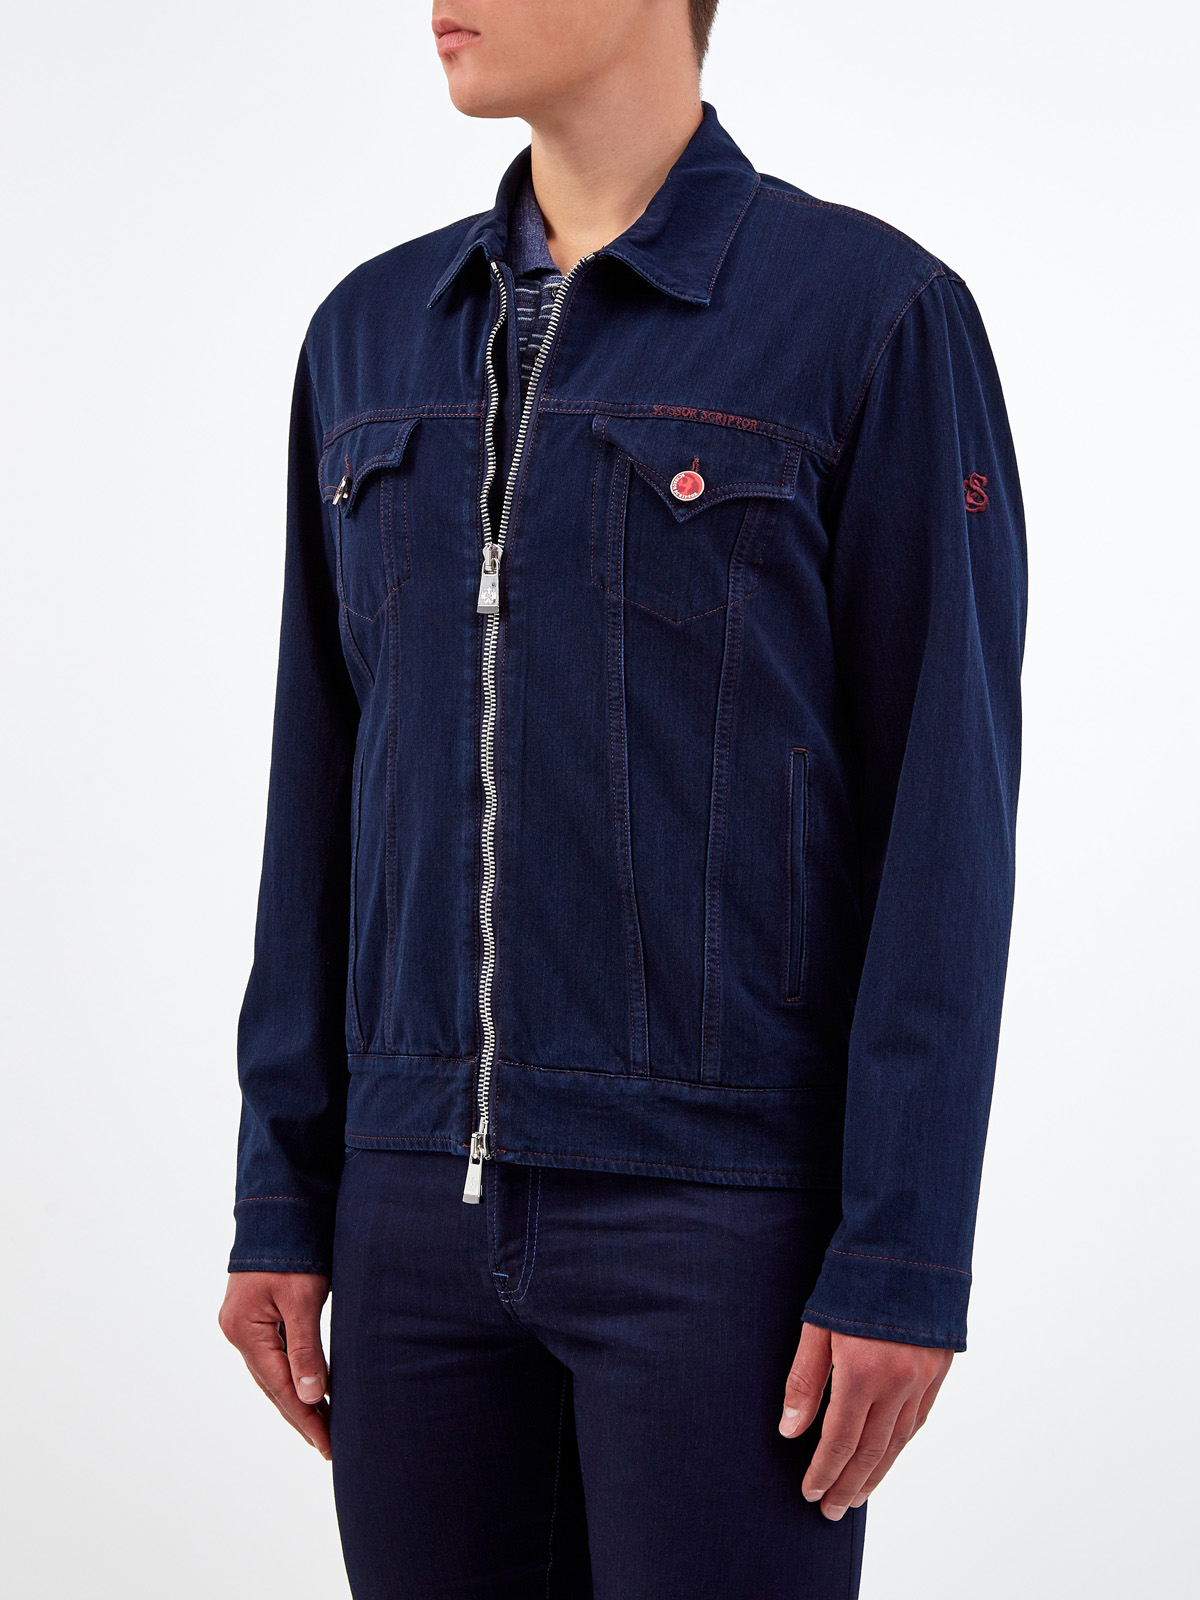 Куртка Decio ручной работы с вышитым логотипом бренда SCISSOR SCRIPTOR, цвет синий, размер 54;56;50 - фото 3